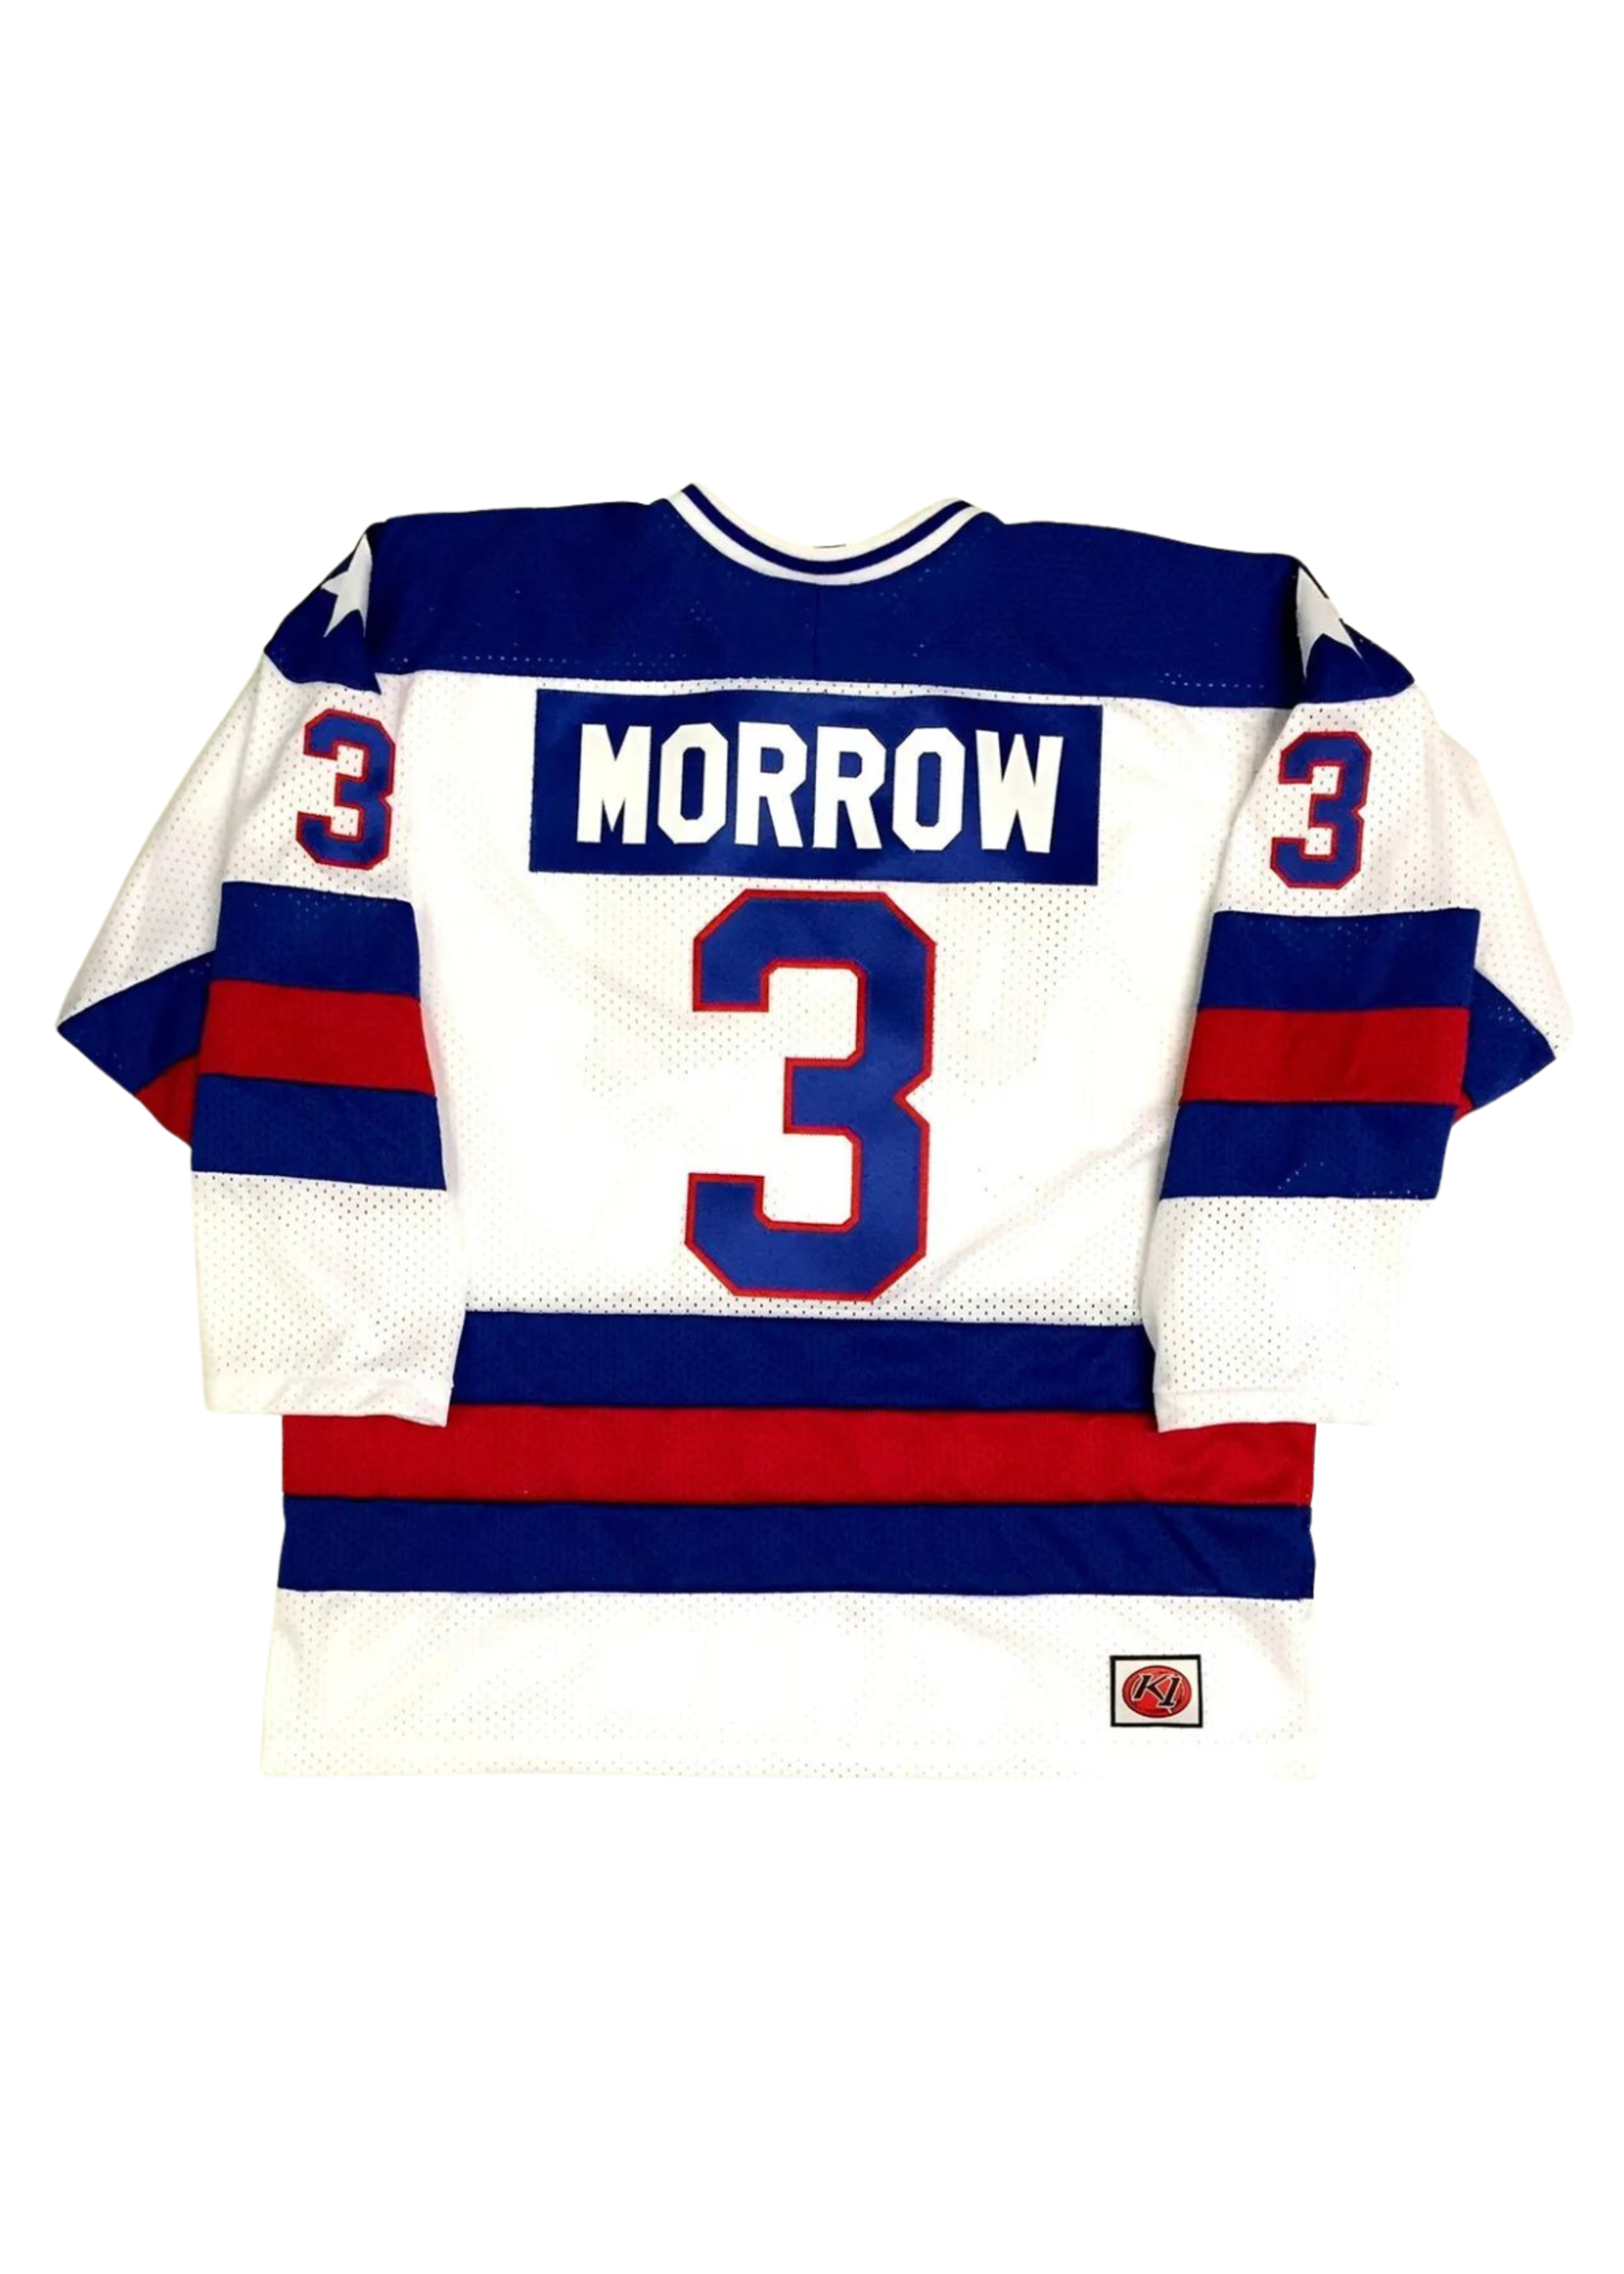 1980 Morrow #3 Jersey